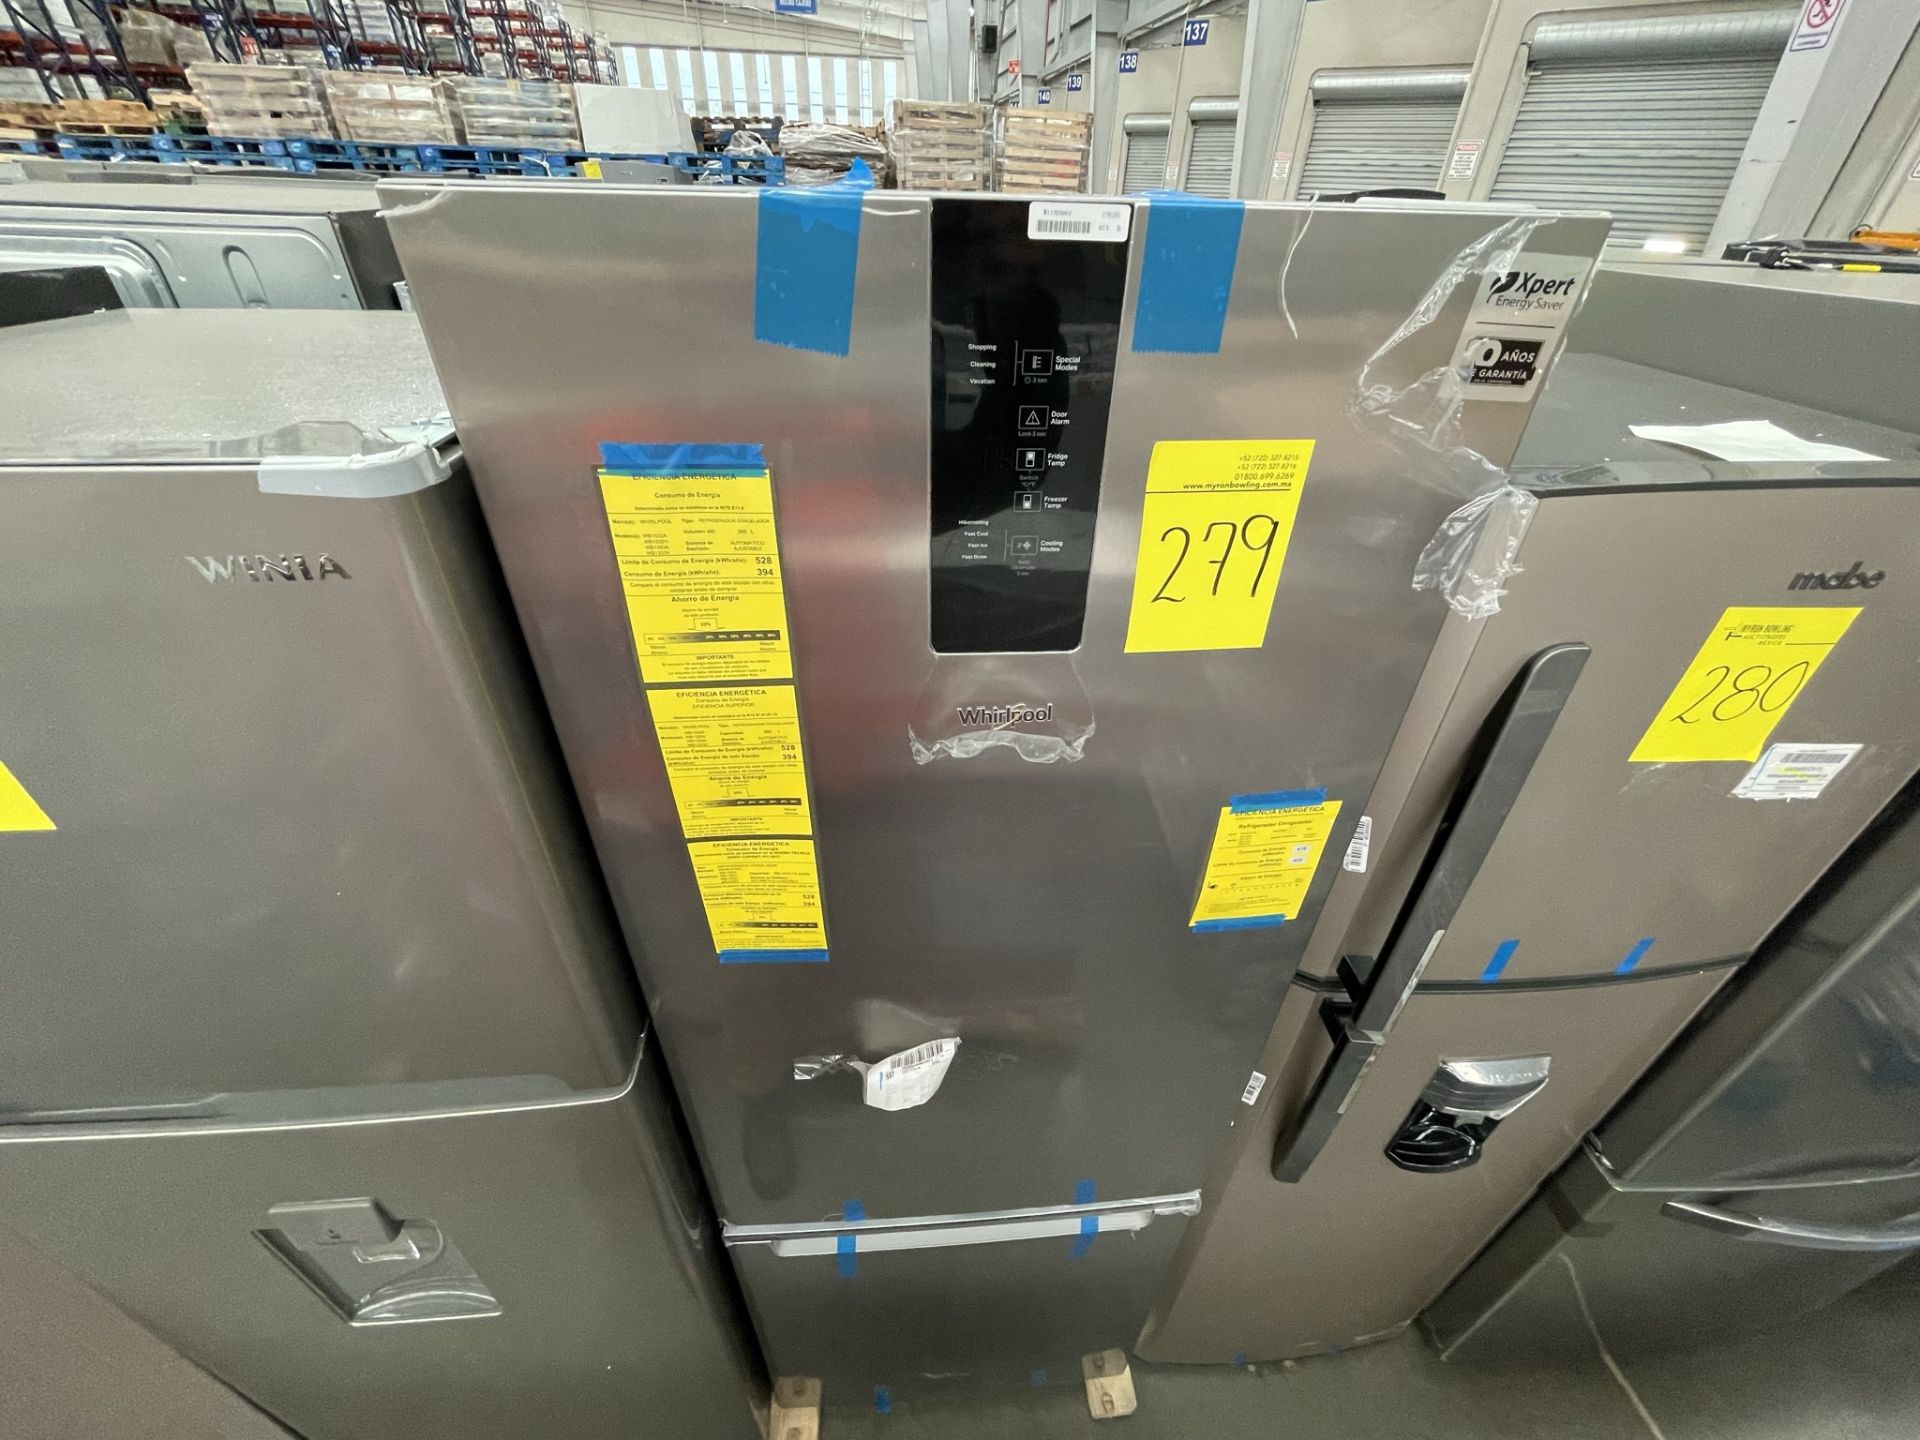 (EQUIPO NUEVO) 1 Refrigerador Marca WHIRPOOL, Modelo WB1332A, Serie WB1332A03, Color GRIS, LB-61189 - Image 5 of 8